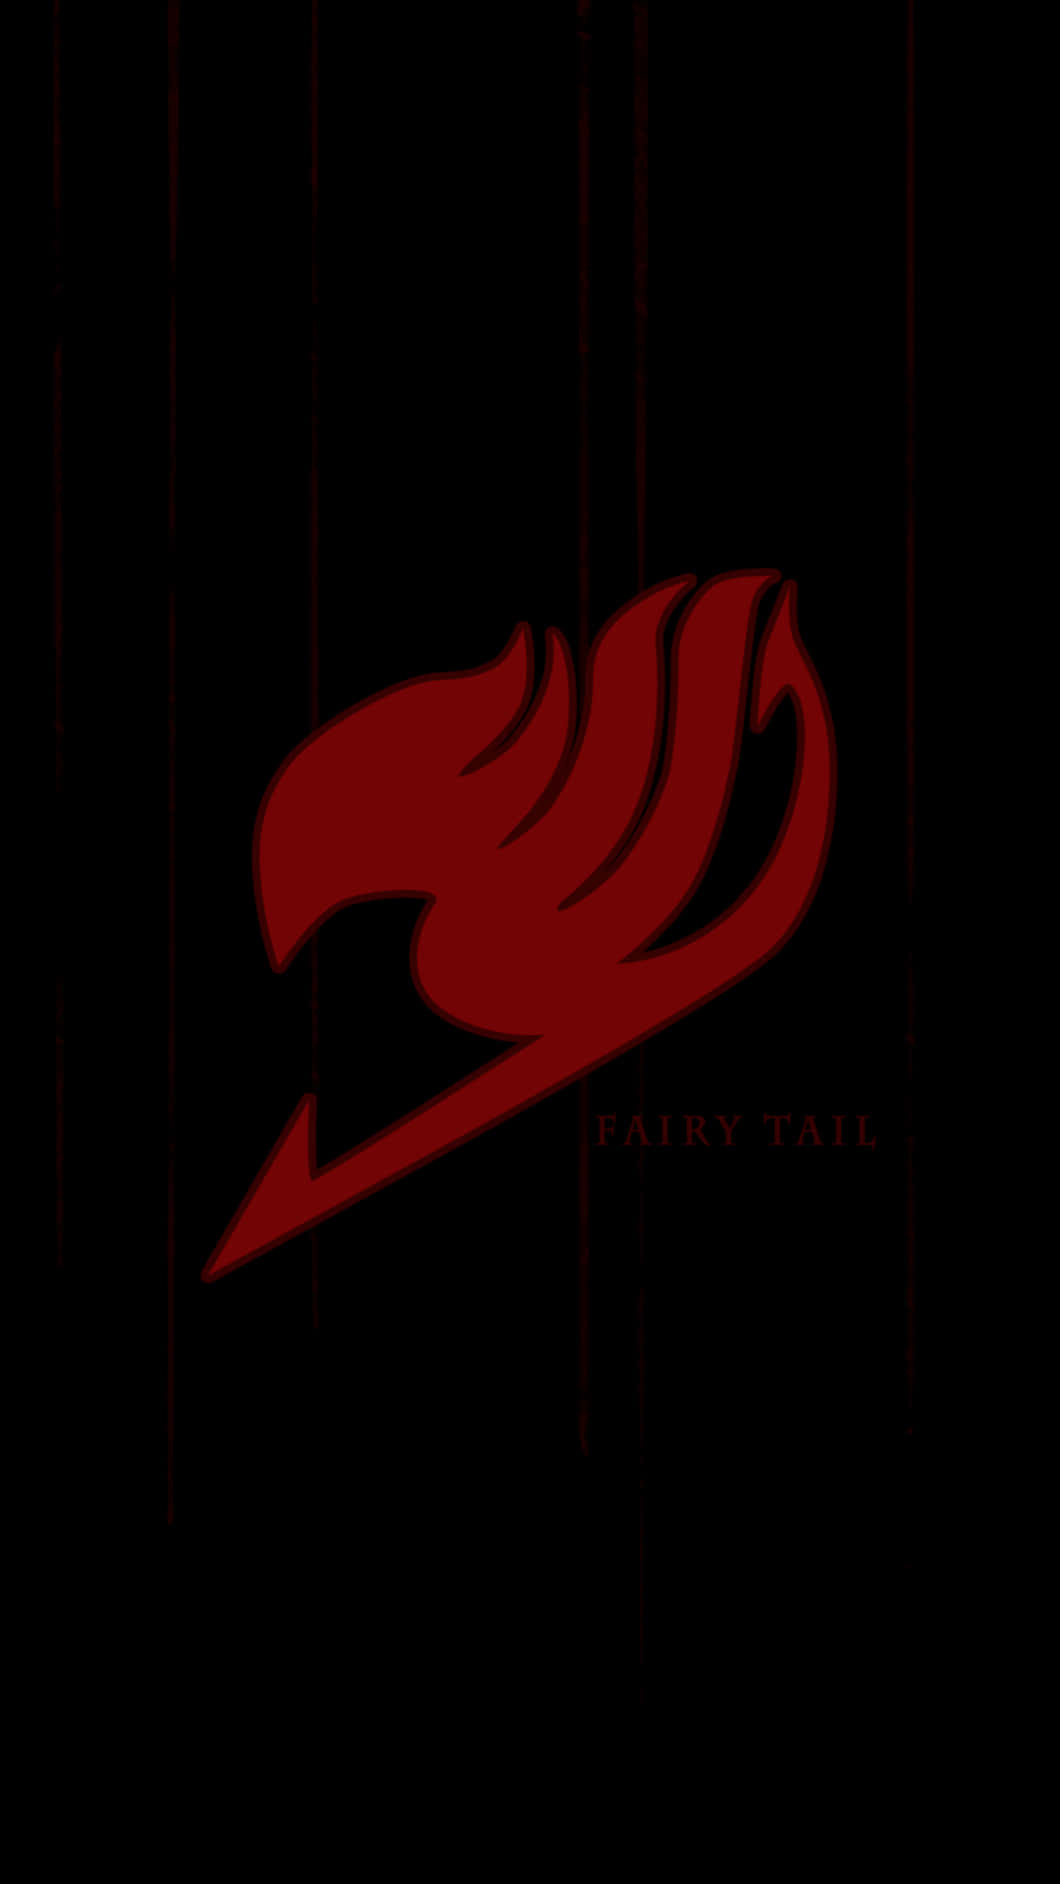 Fairytail Logo Para Iphone En Negro Setting. Fondo de pantalla